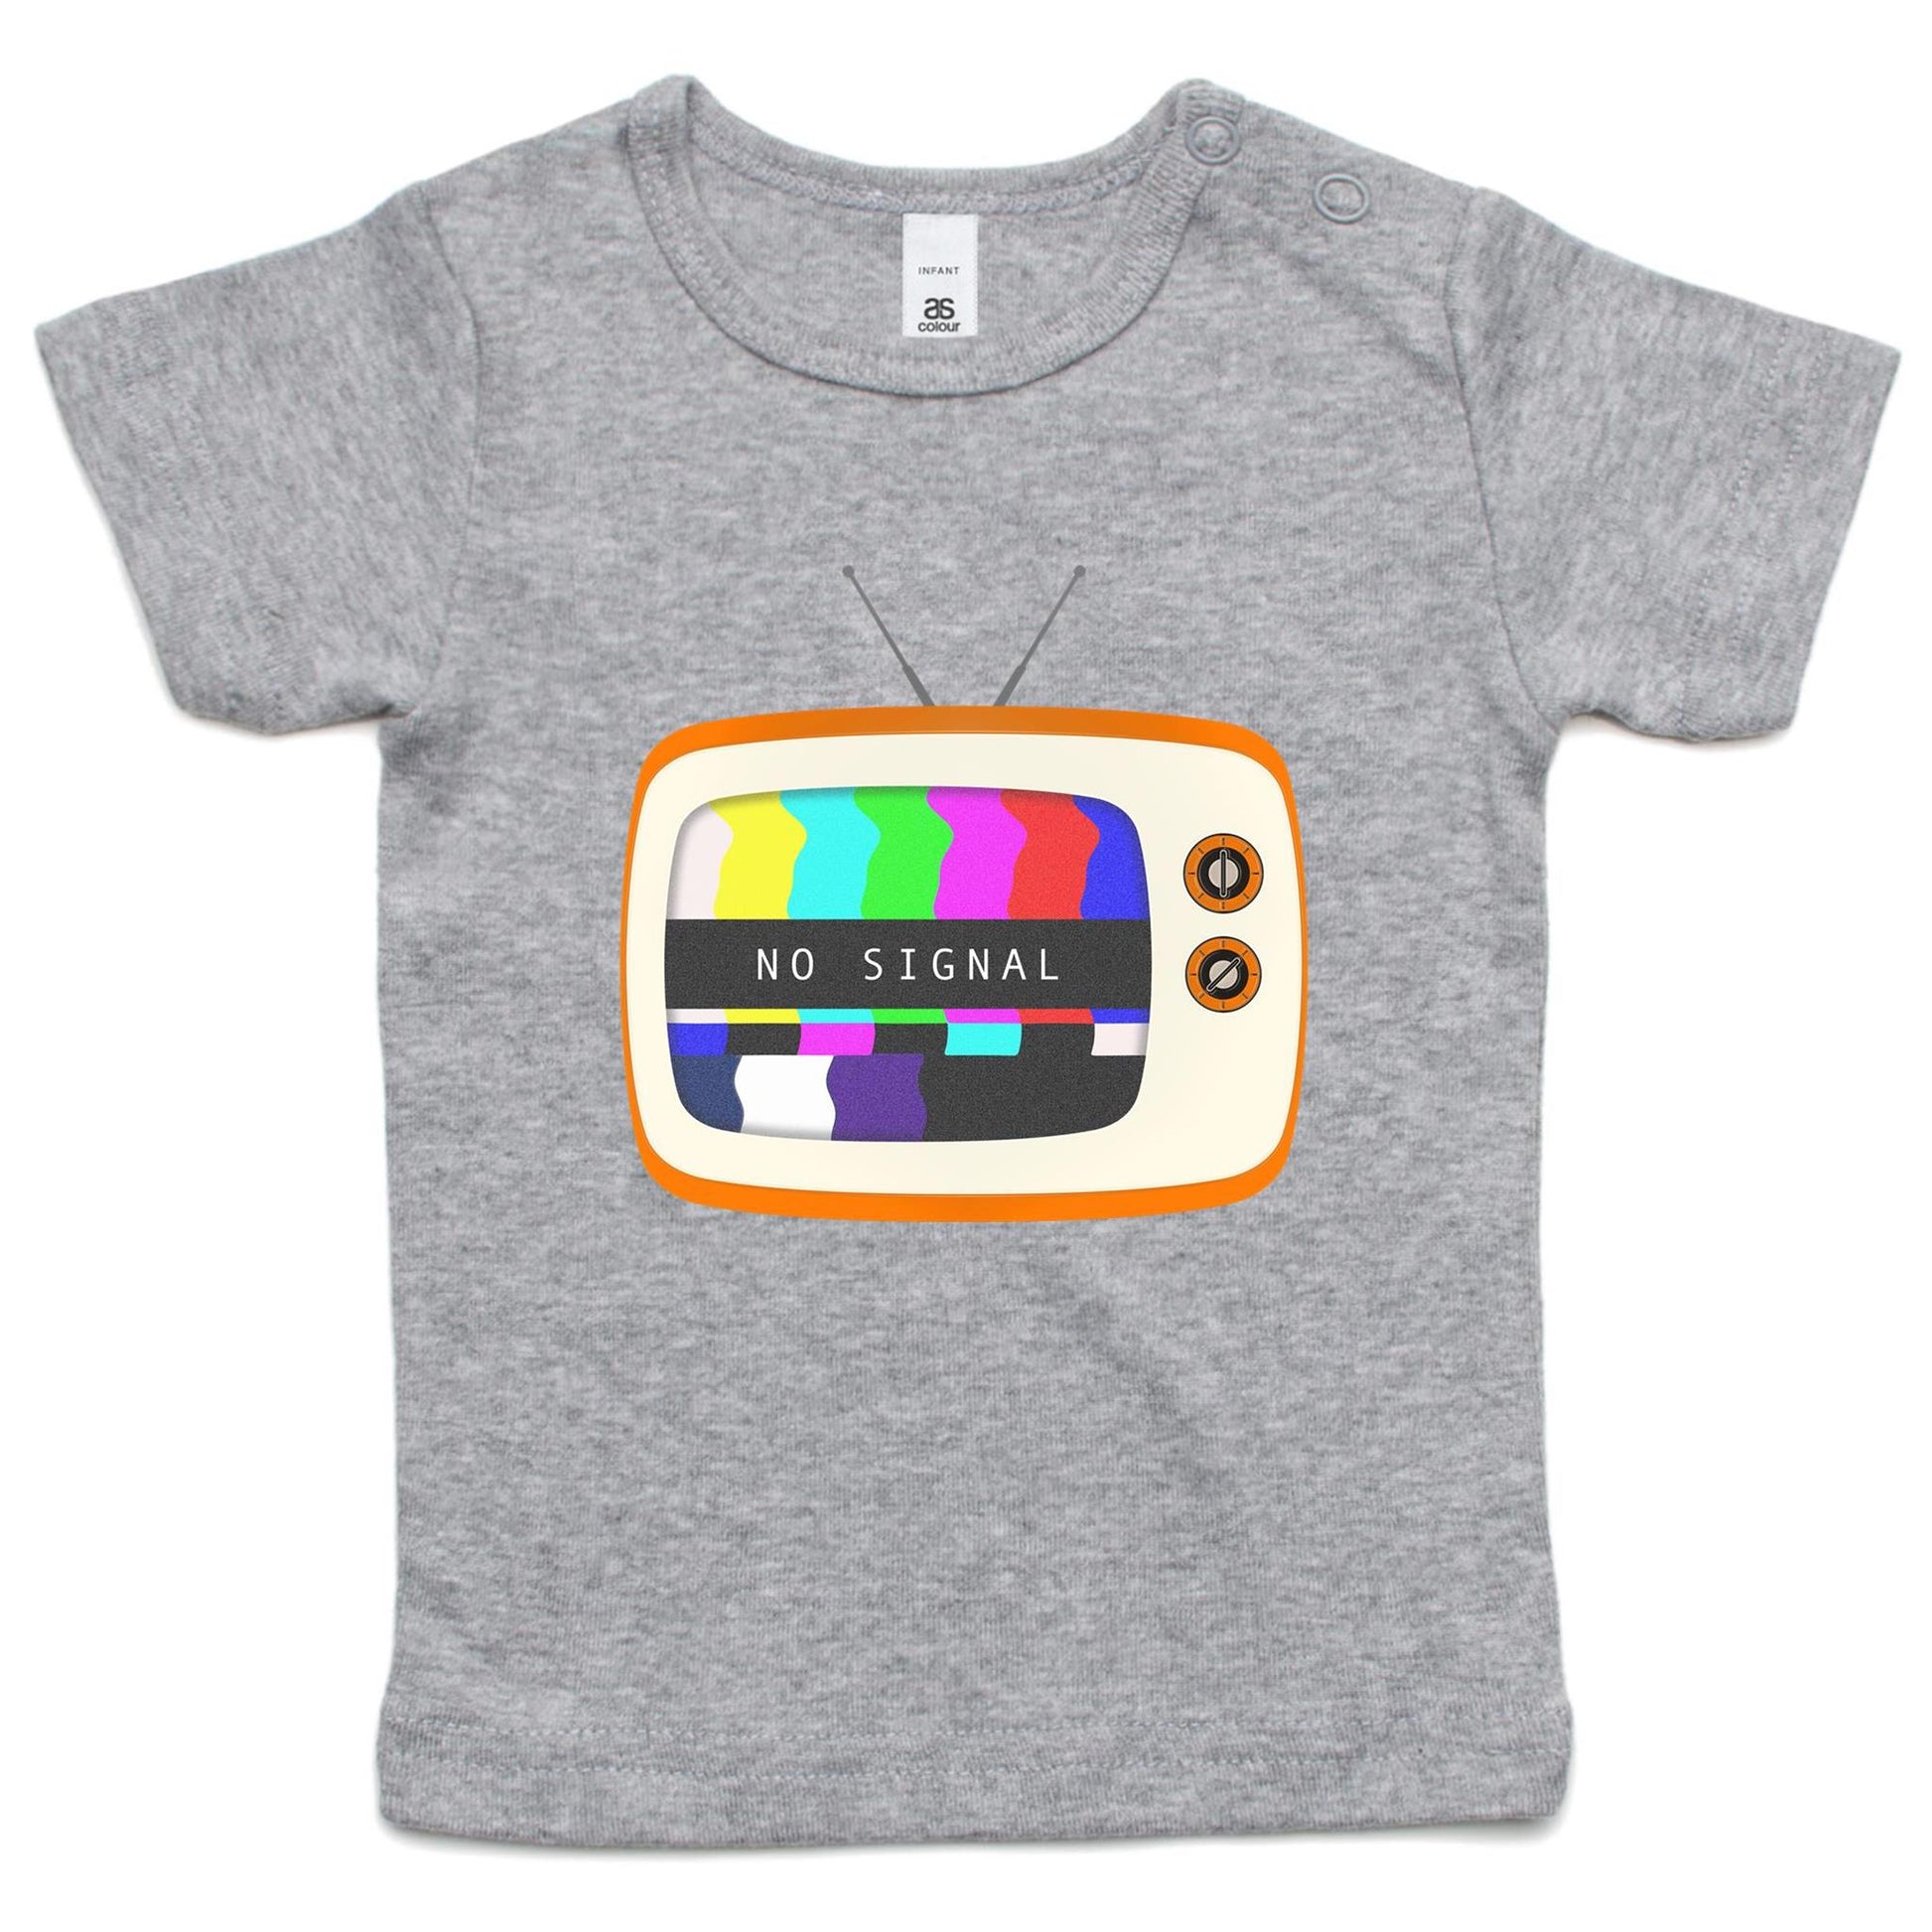 Retro Television, No Signal - Baby T-shirt Grey Marle Baby T-shirt Retro